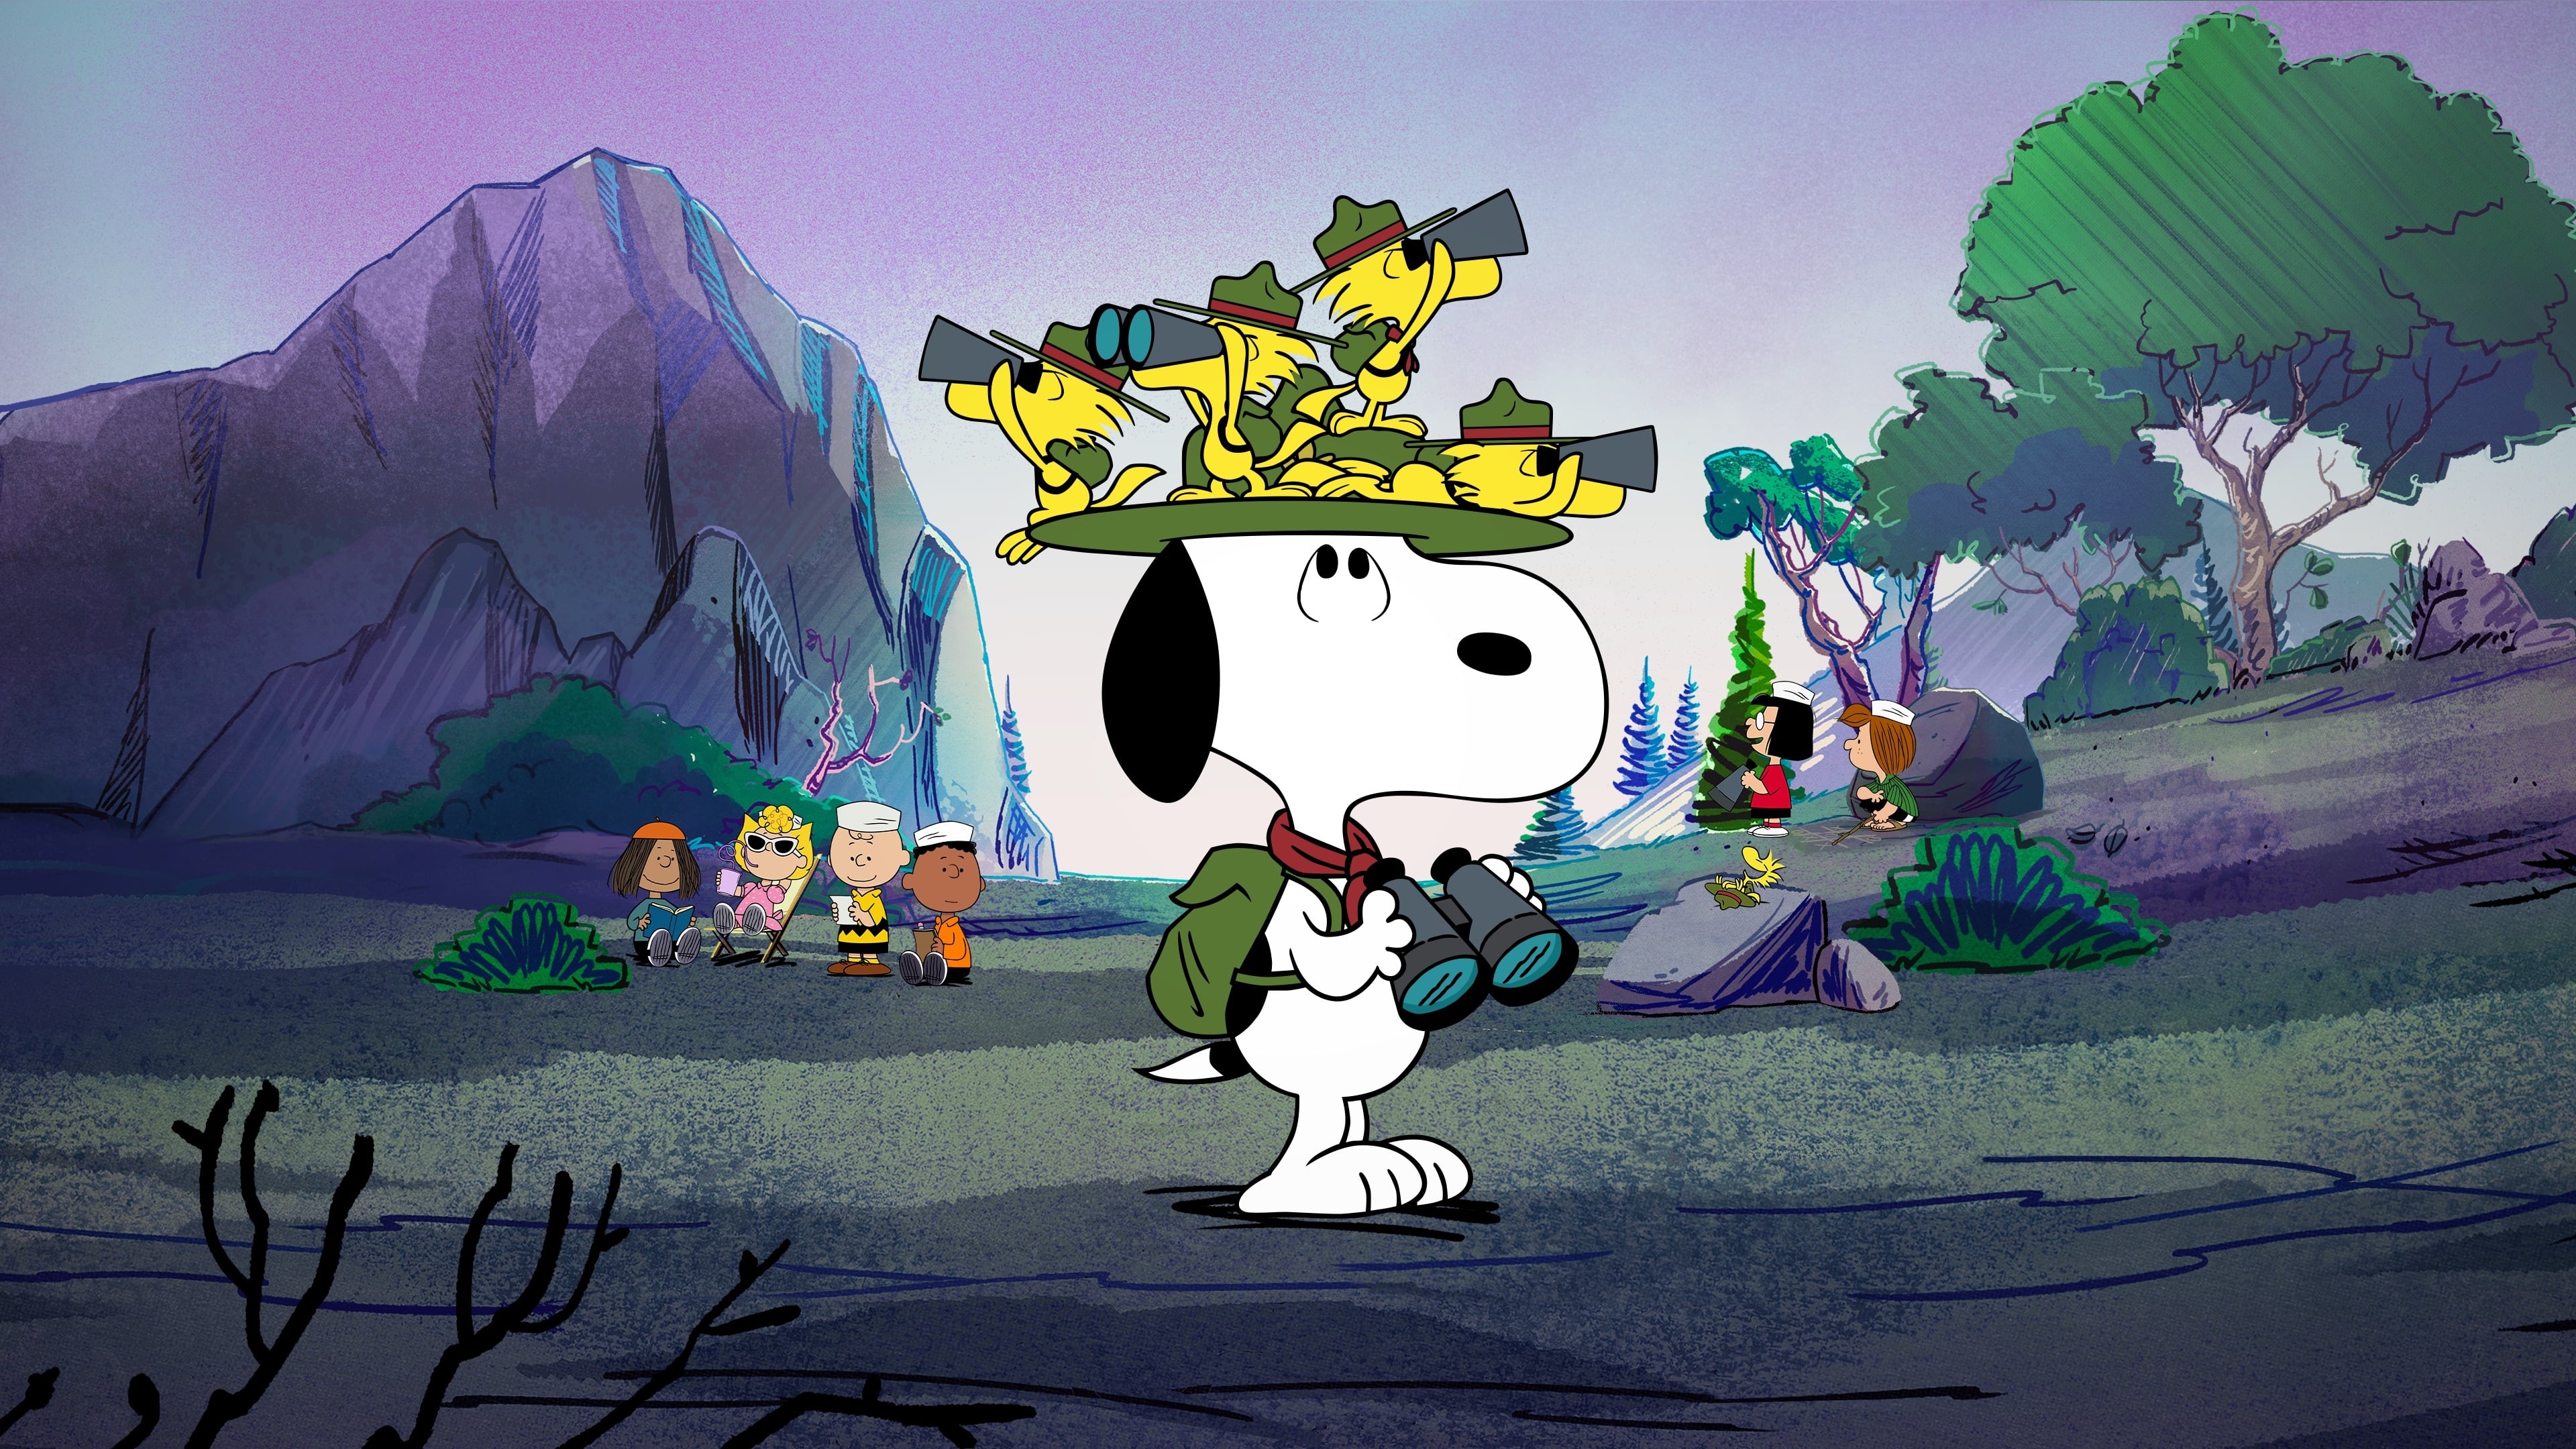 In campeggio con Snoopy